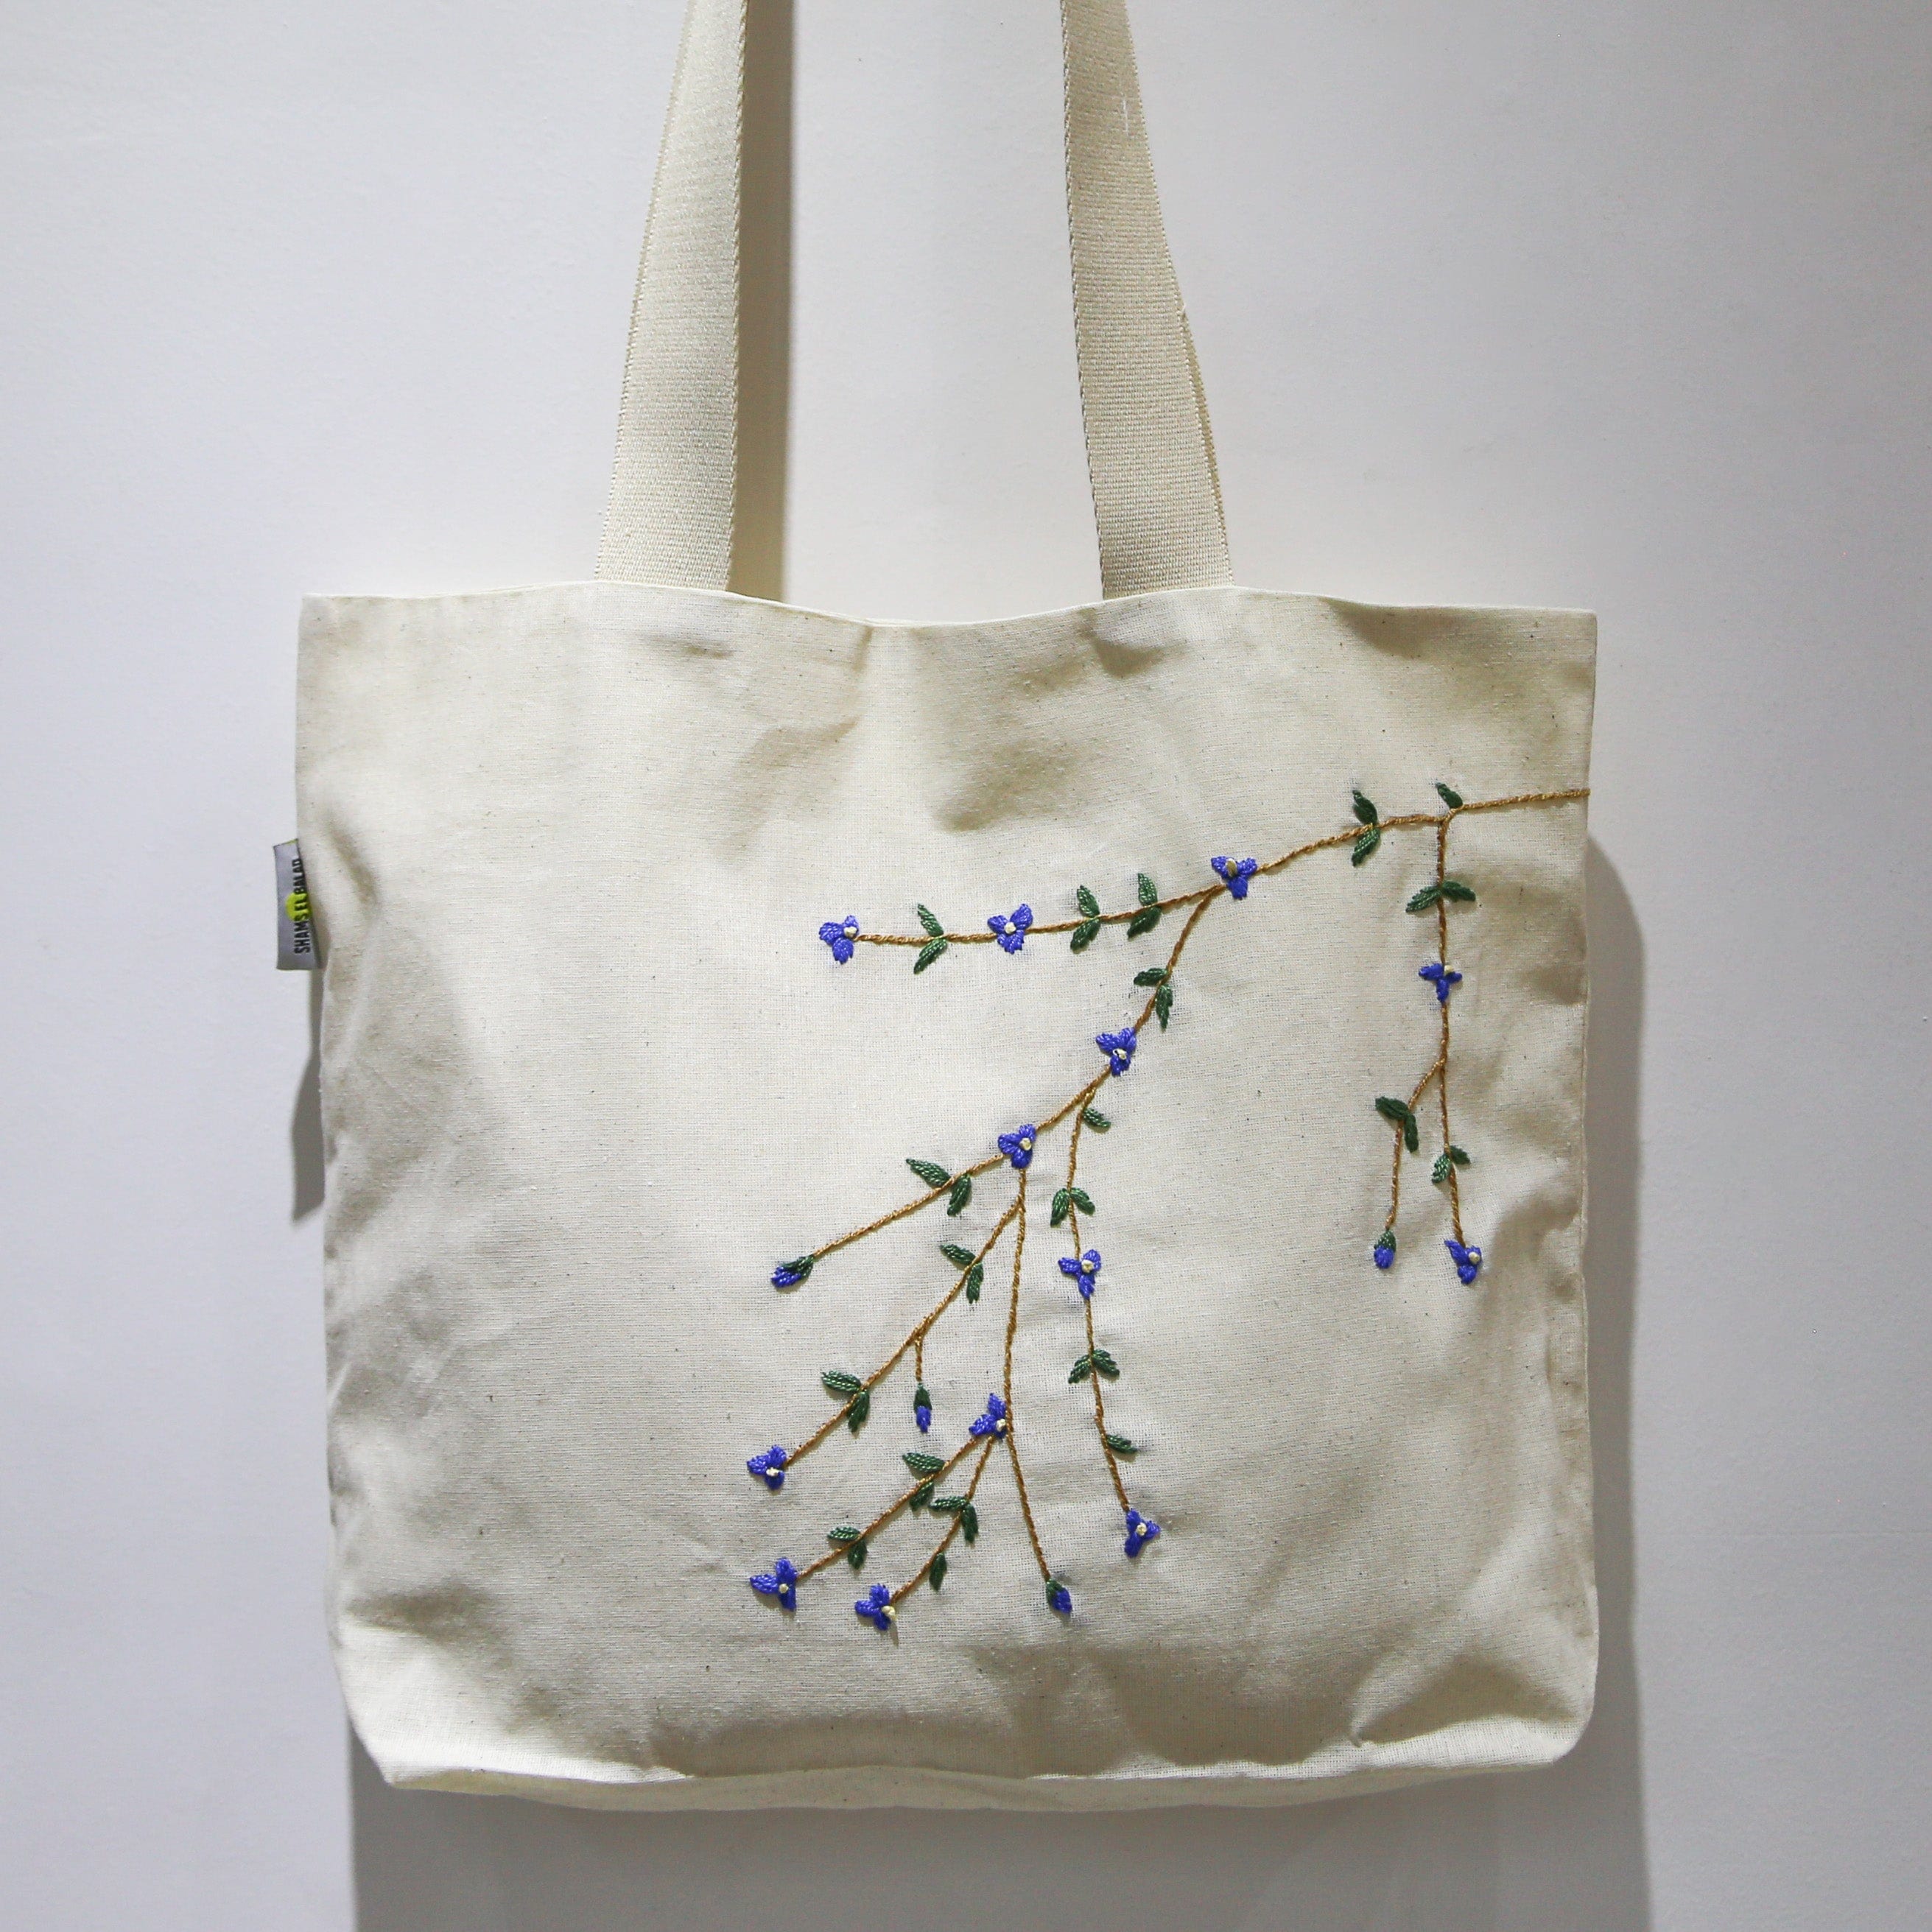 Shams El Balad Tote bag Large Blue Hanging flowers Embroidered Tote Bag